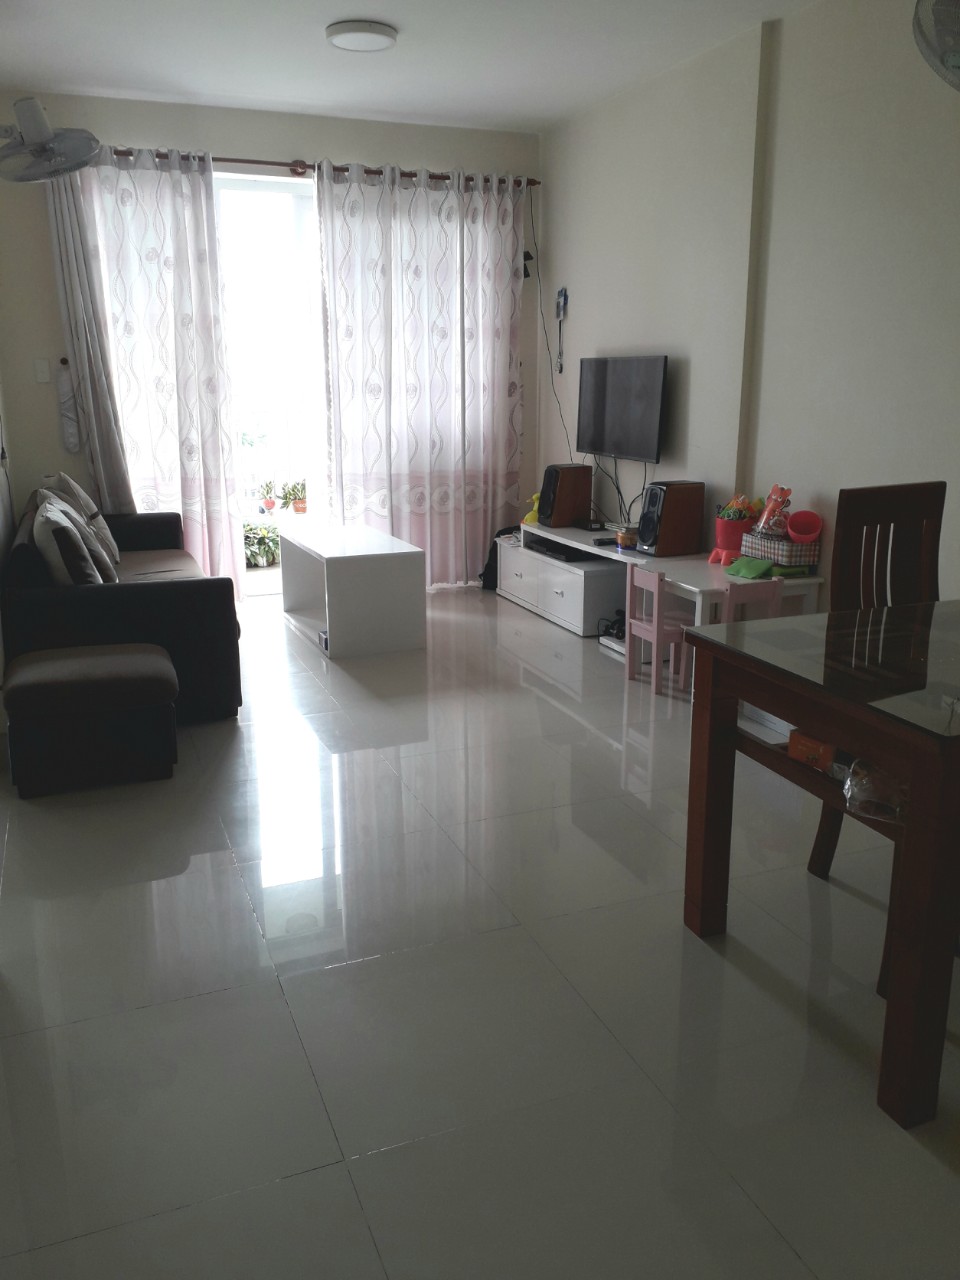 Cho thuê căn hộ Thủ Thiêm Star, 83m2, 2PN, 2WC, ban công, có nội thất, giá 9 tr/tháng. 0903 8242 49